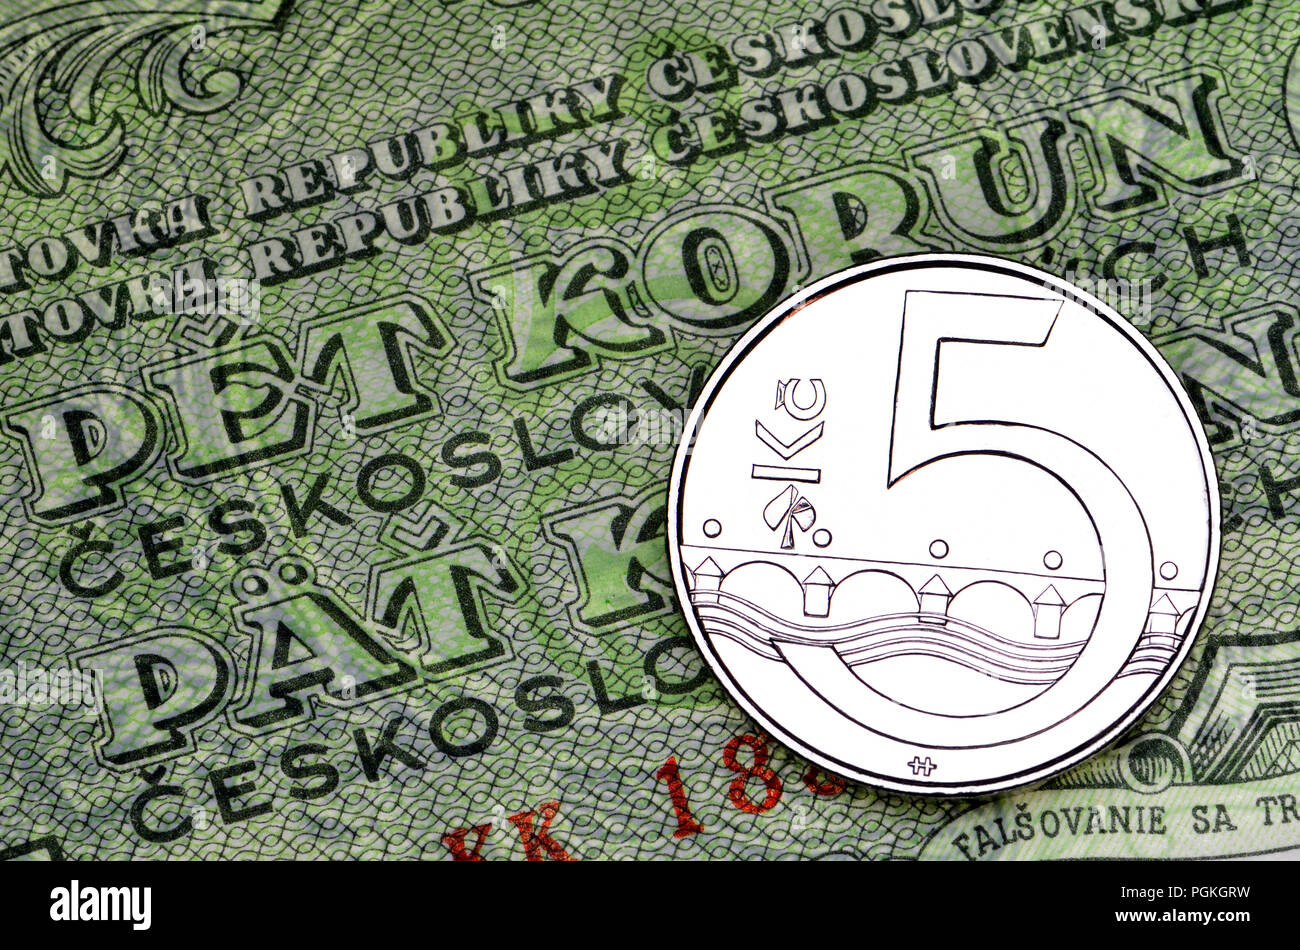 Tschechische Münzen und Banknoten: Currenct 5Kc Münze auf 1953 fünf Korun tschechoslowakischen Banknote. Banknote Text in Tschechisch und Slowakisch Stockfoto